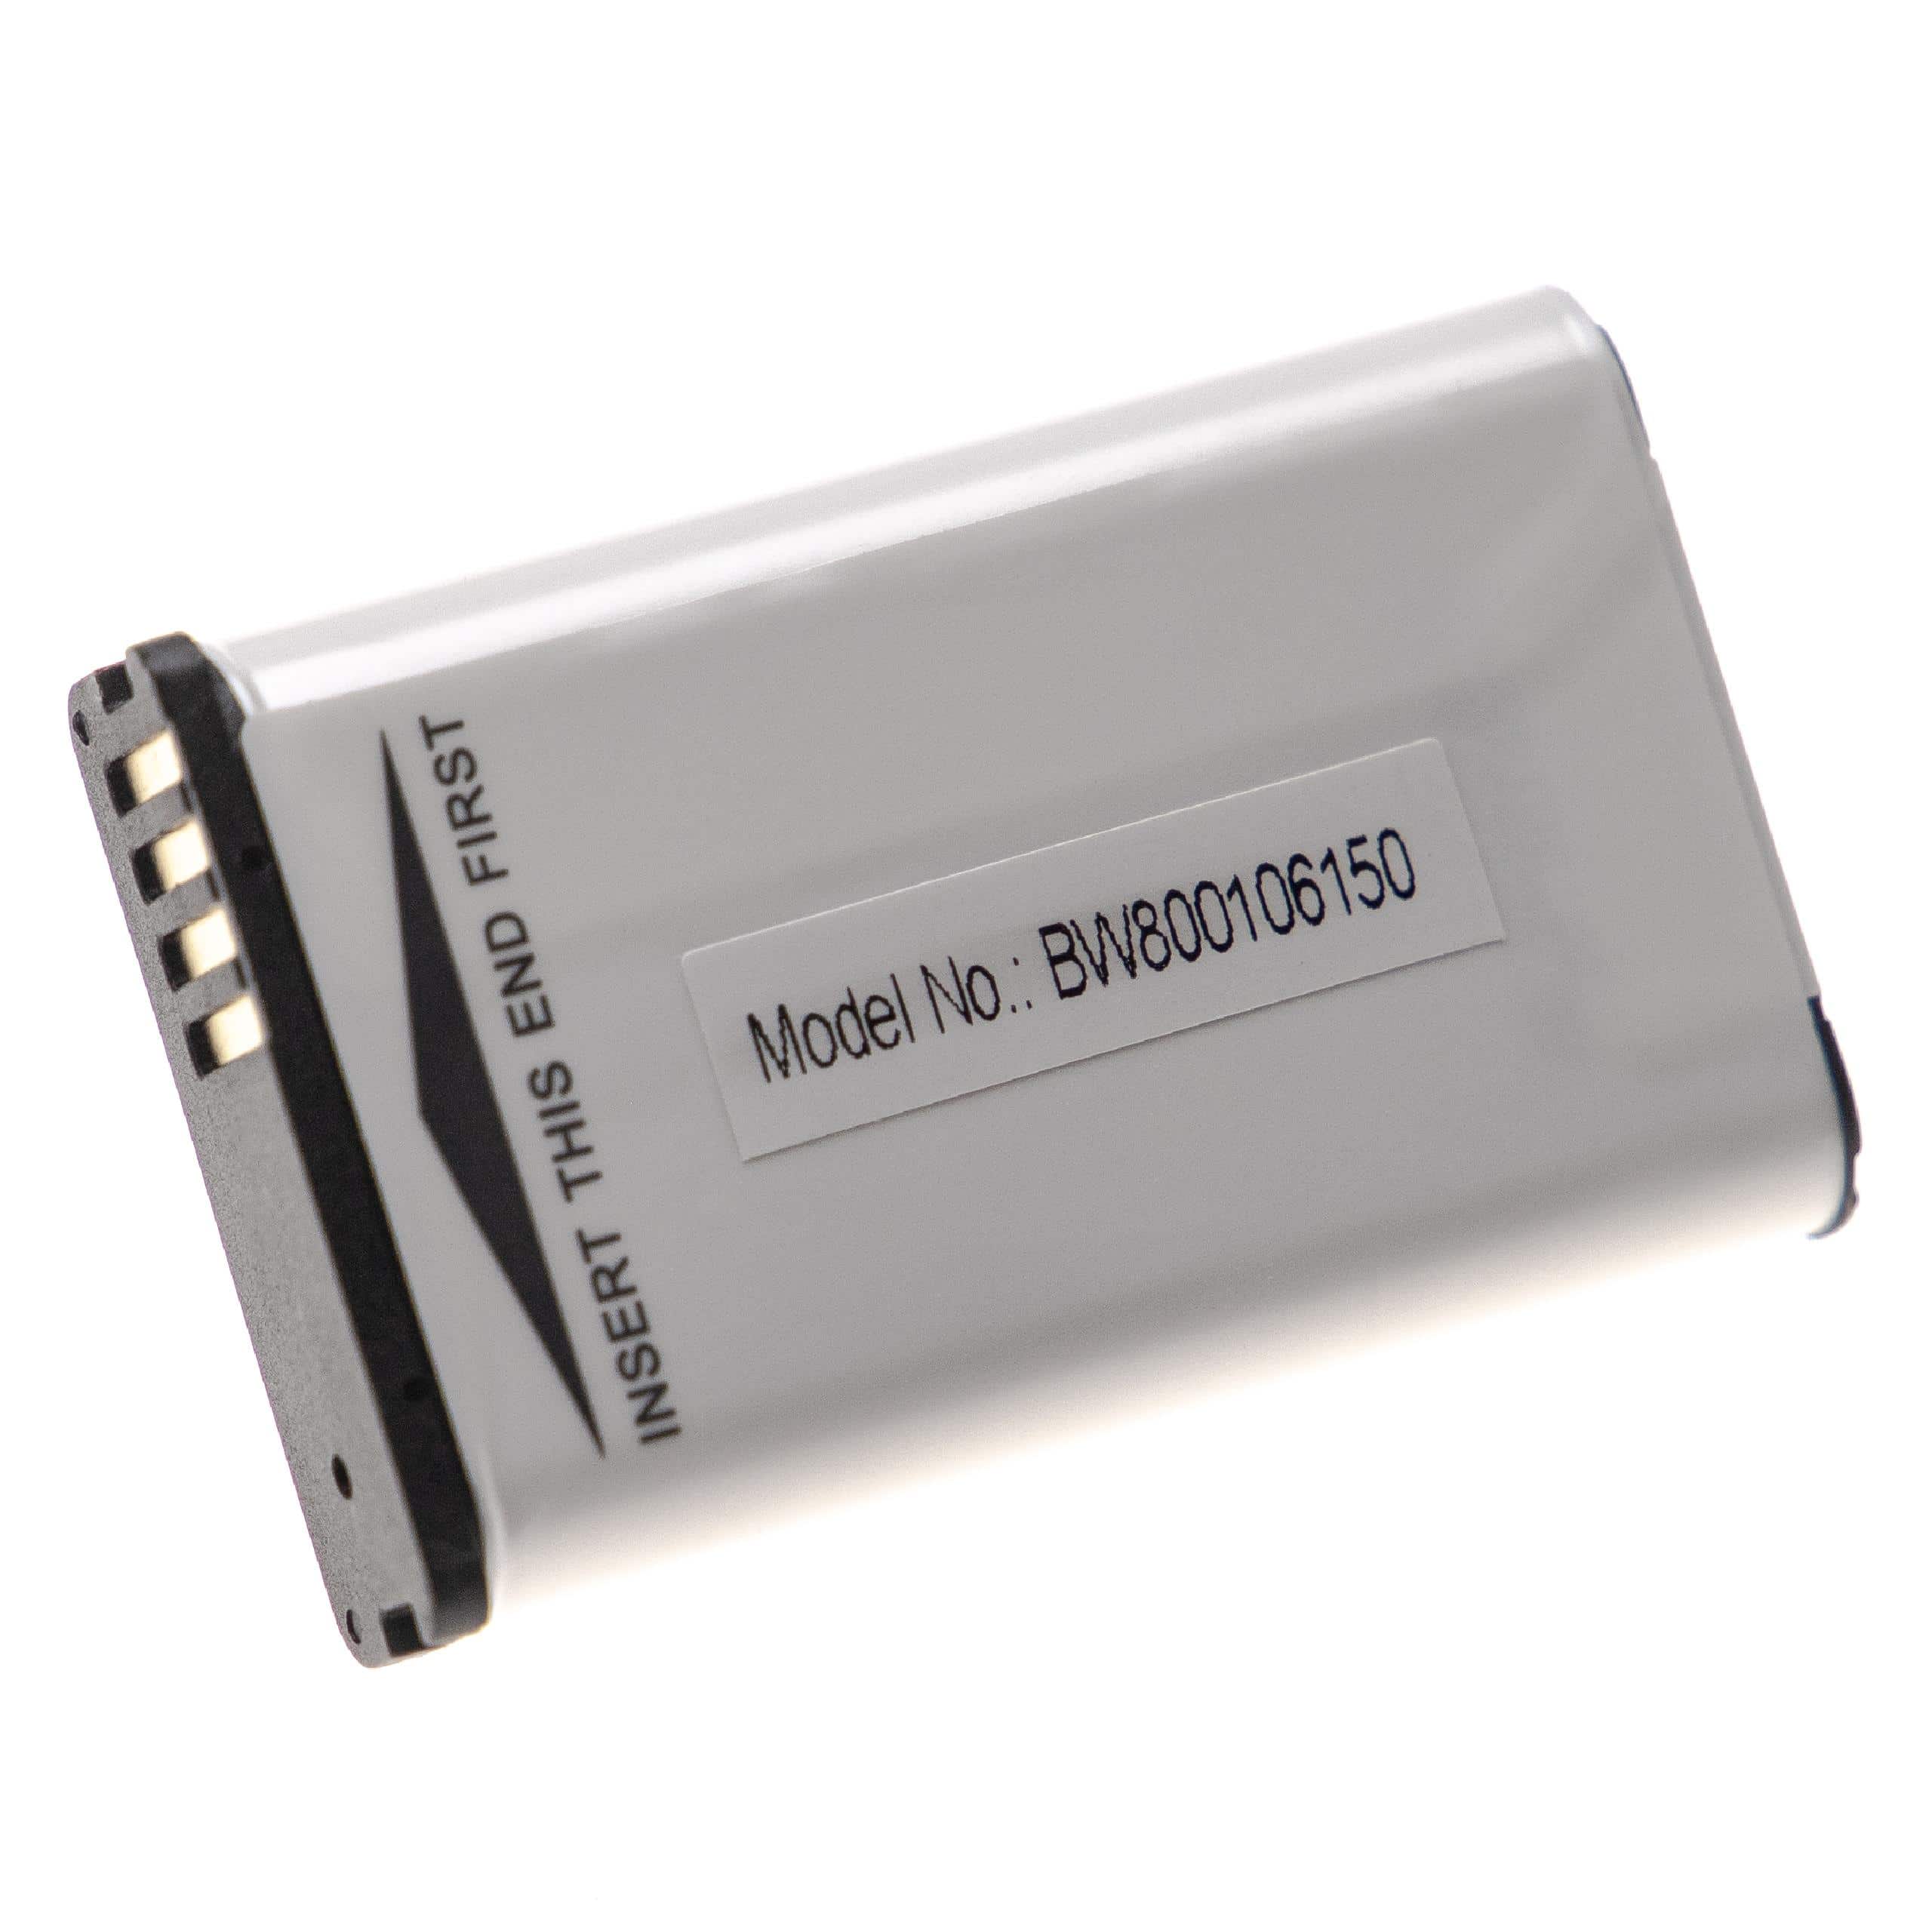 Akumulator do nawigacji GPS zamiennik Garmin 361-00053-00, 010-11599-00, 010-11654-03 - 1800 mAh 3,7 V Li-Ion